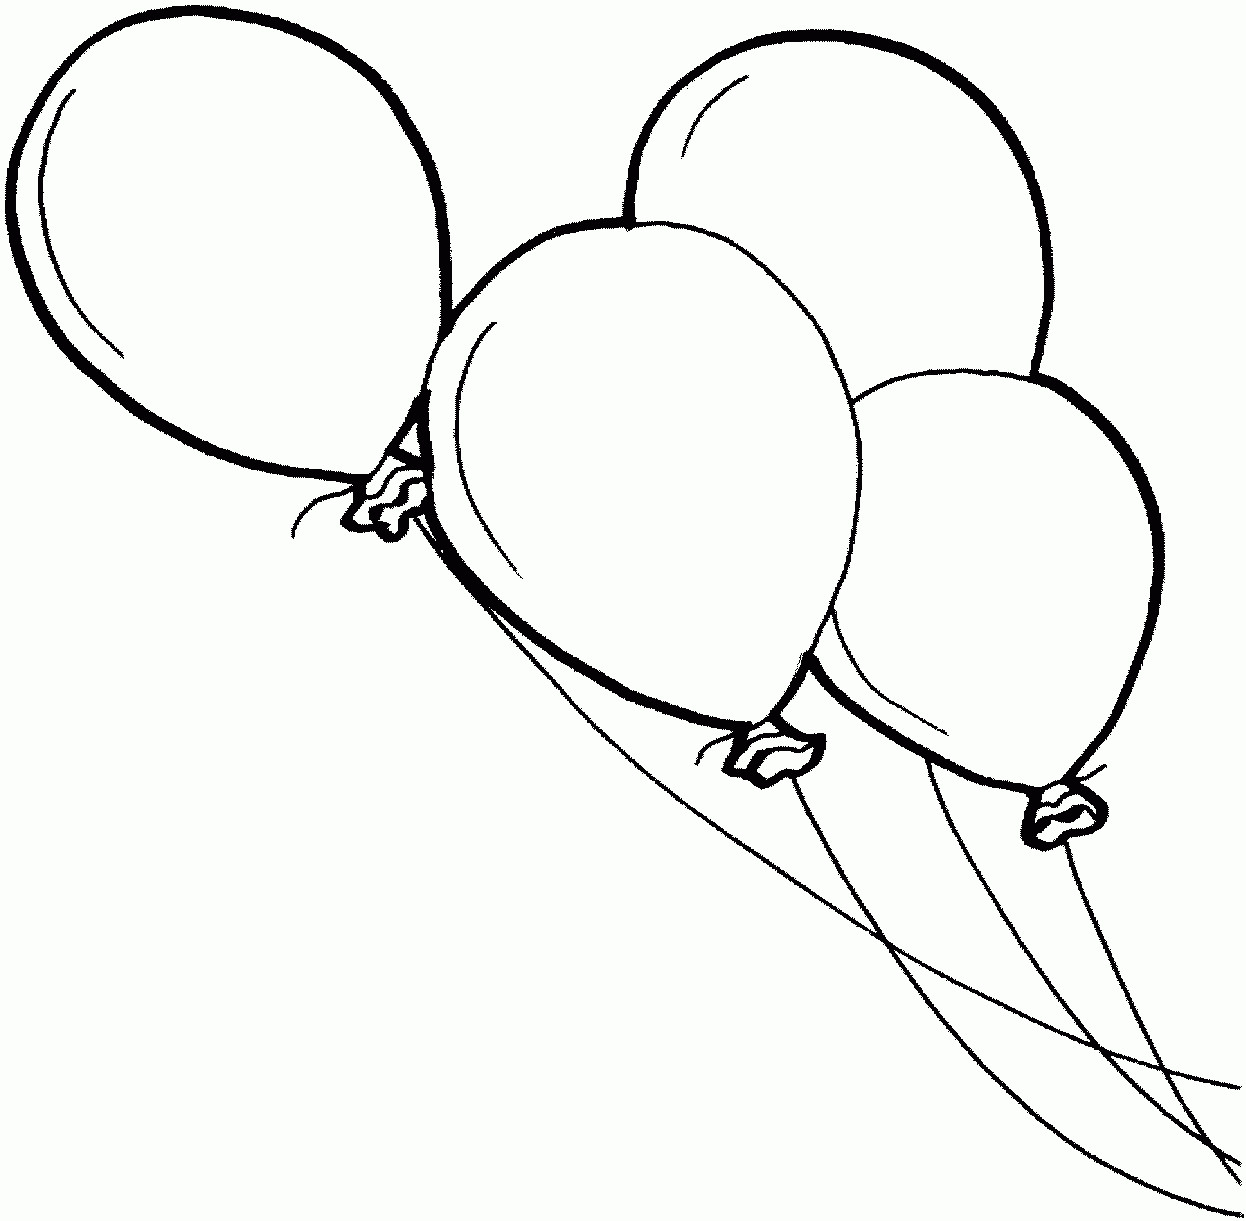 Luftballons Ausmalbilder
 Malvorlagen Ausmalbilder Luftballon